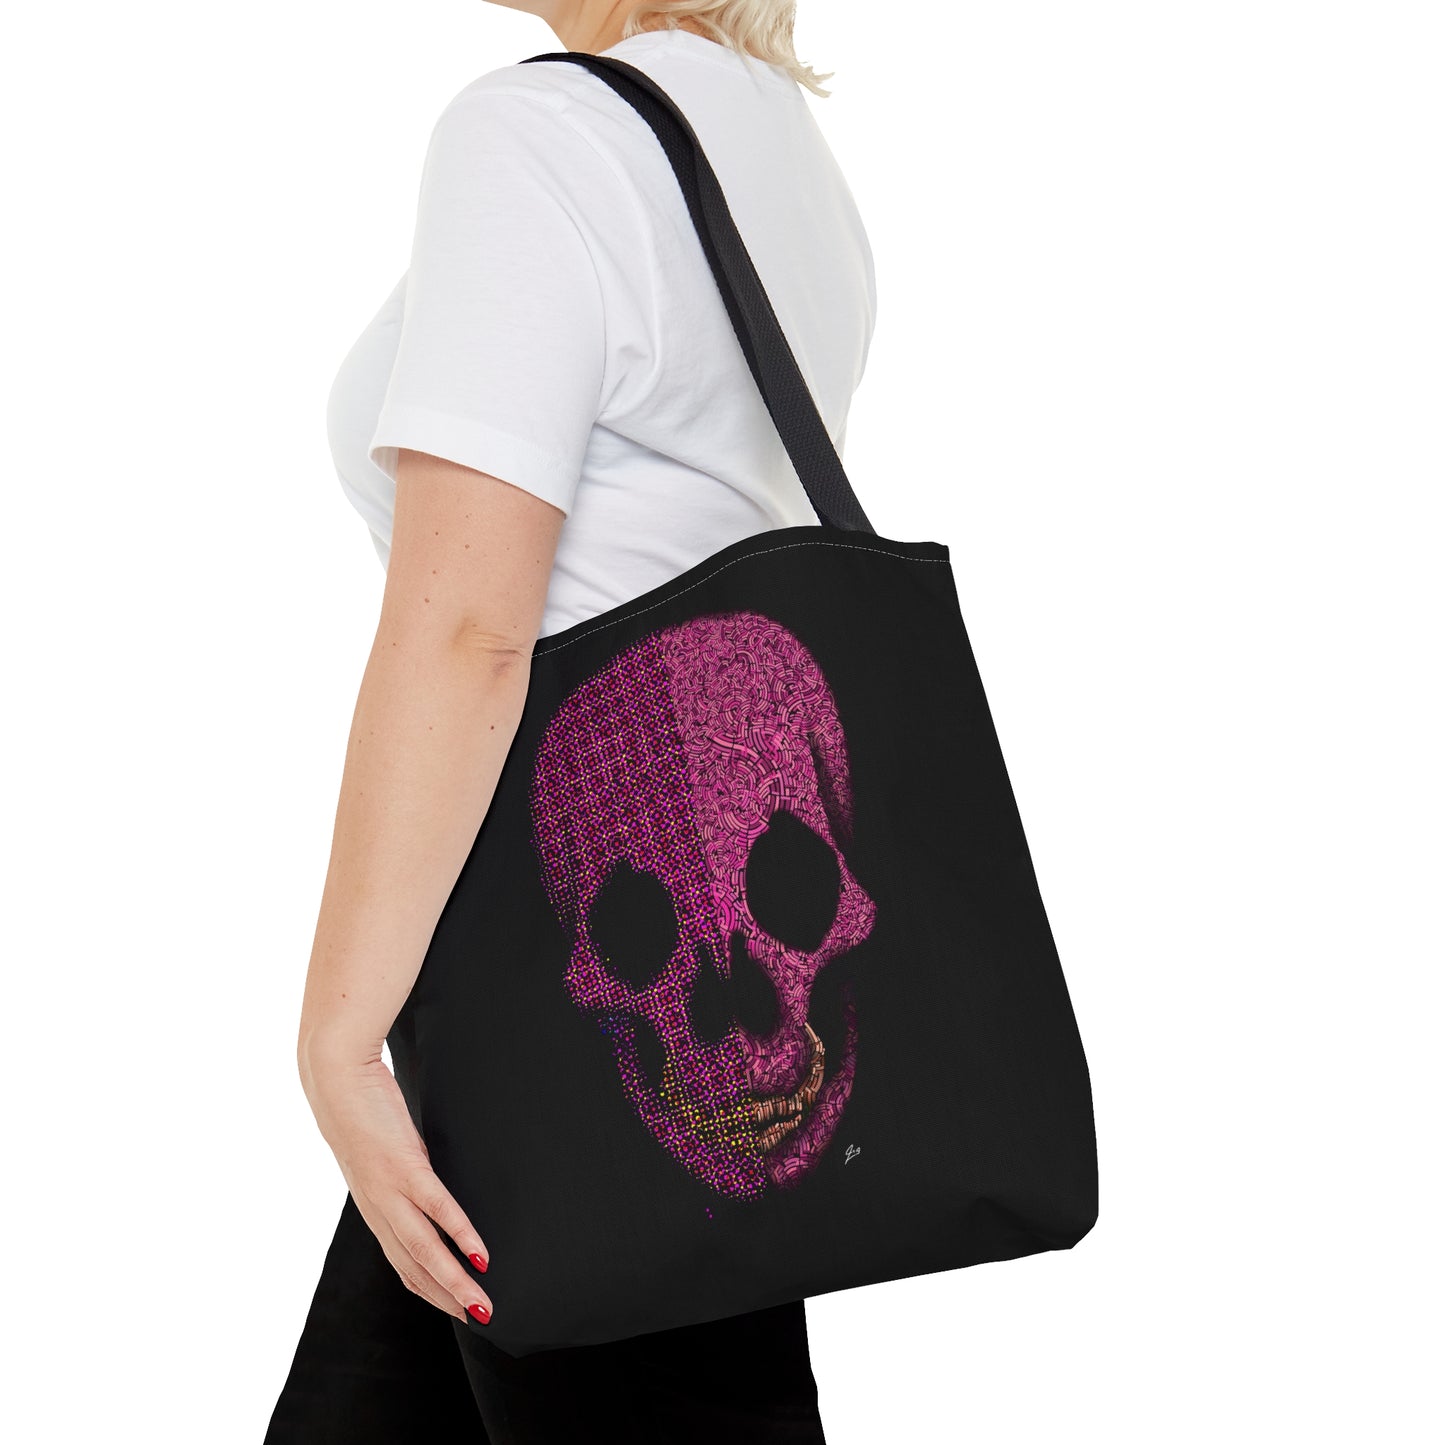 Pink Skull Designed Tote Bag (AOP)